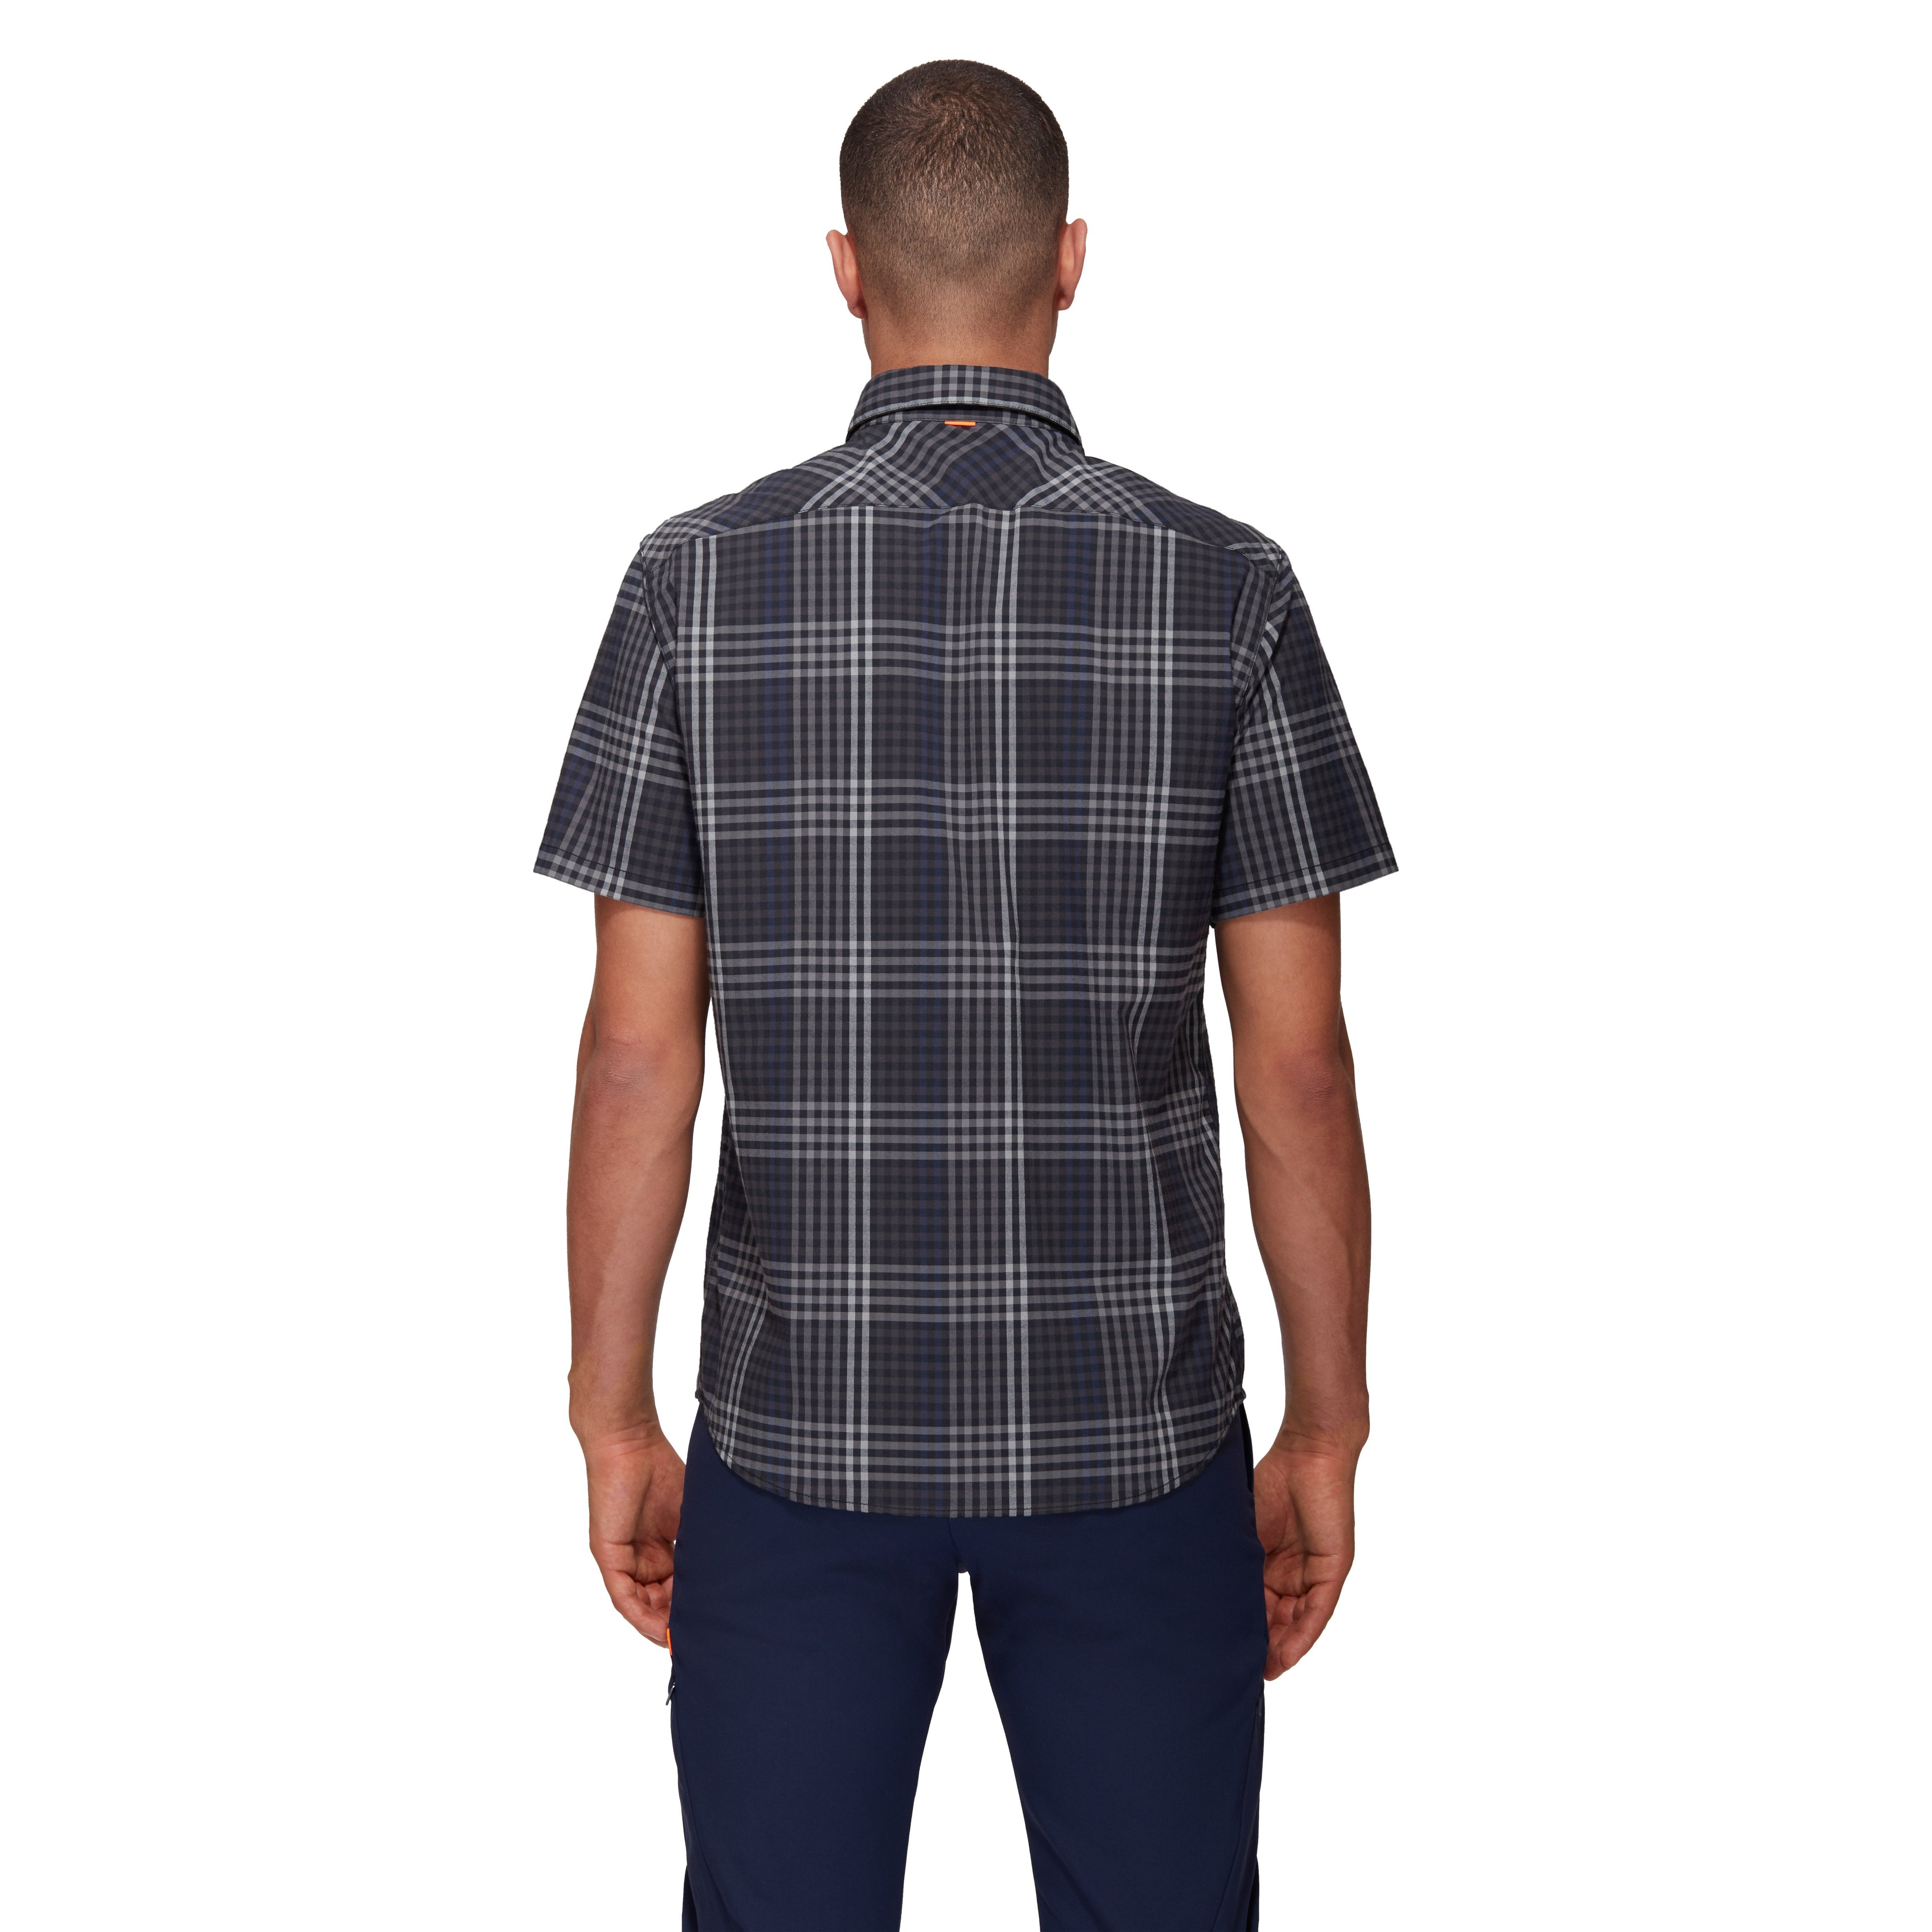 Calanca Shirt Men product image